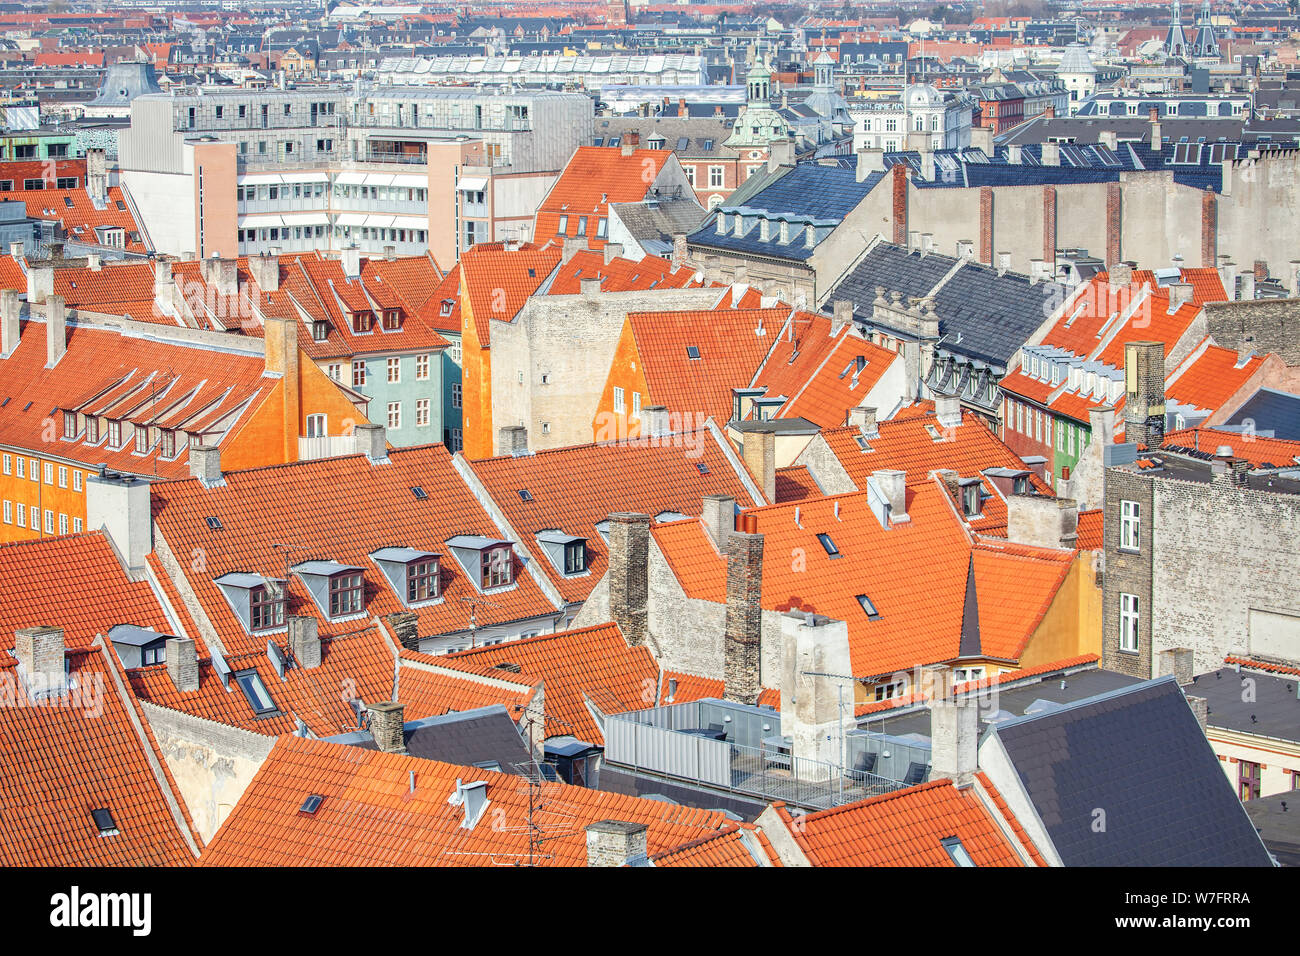 La vieille ville de Copenhague vue aérienne de toits rouges Banque D'Images